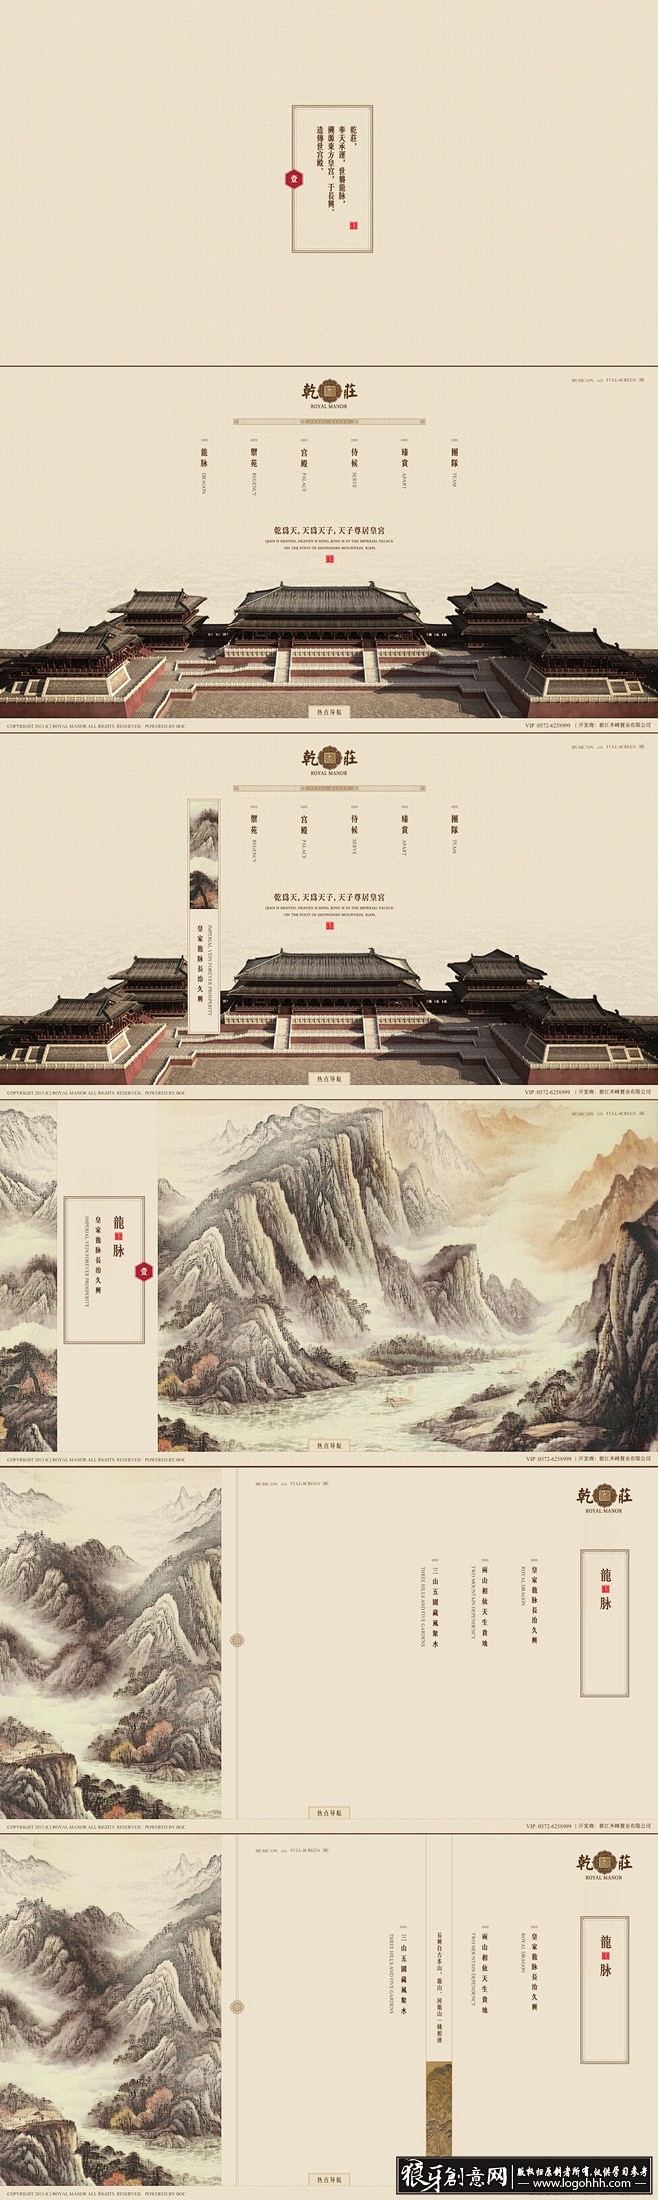 中国风 中国风海报画册版式设计 中国传统...